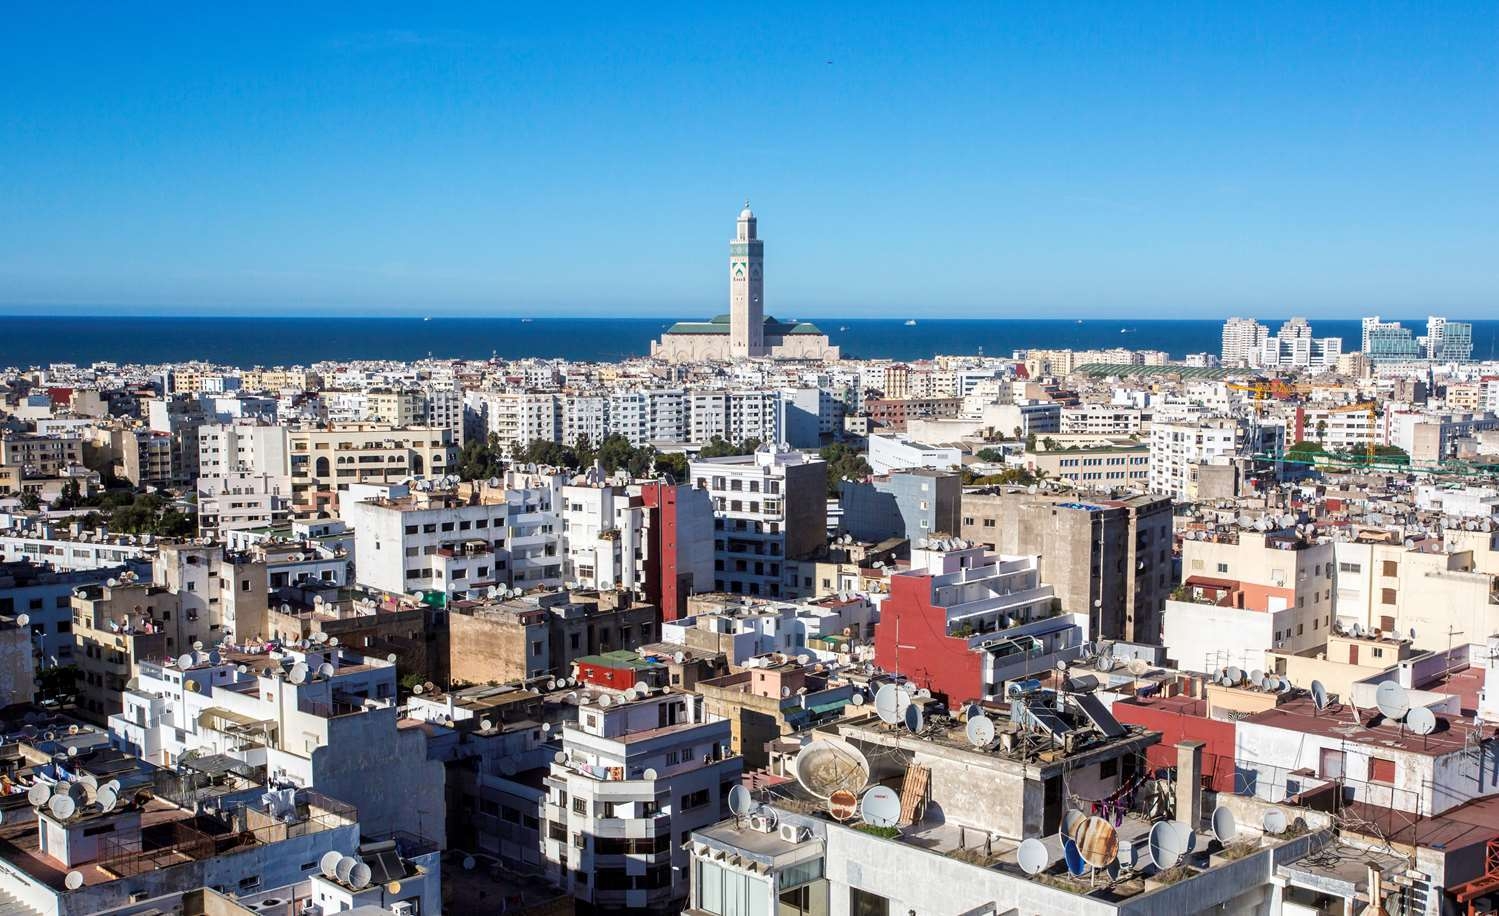 Gaspillage d’eau: de nouvelles mesures annoncées à Casablanca